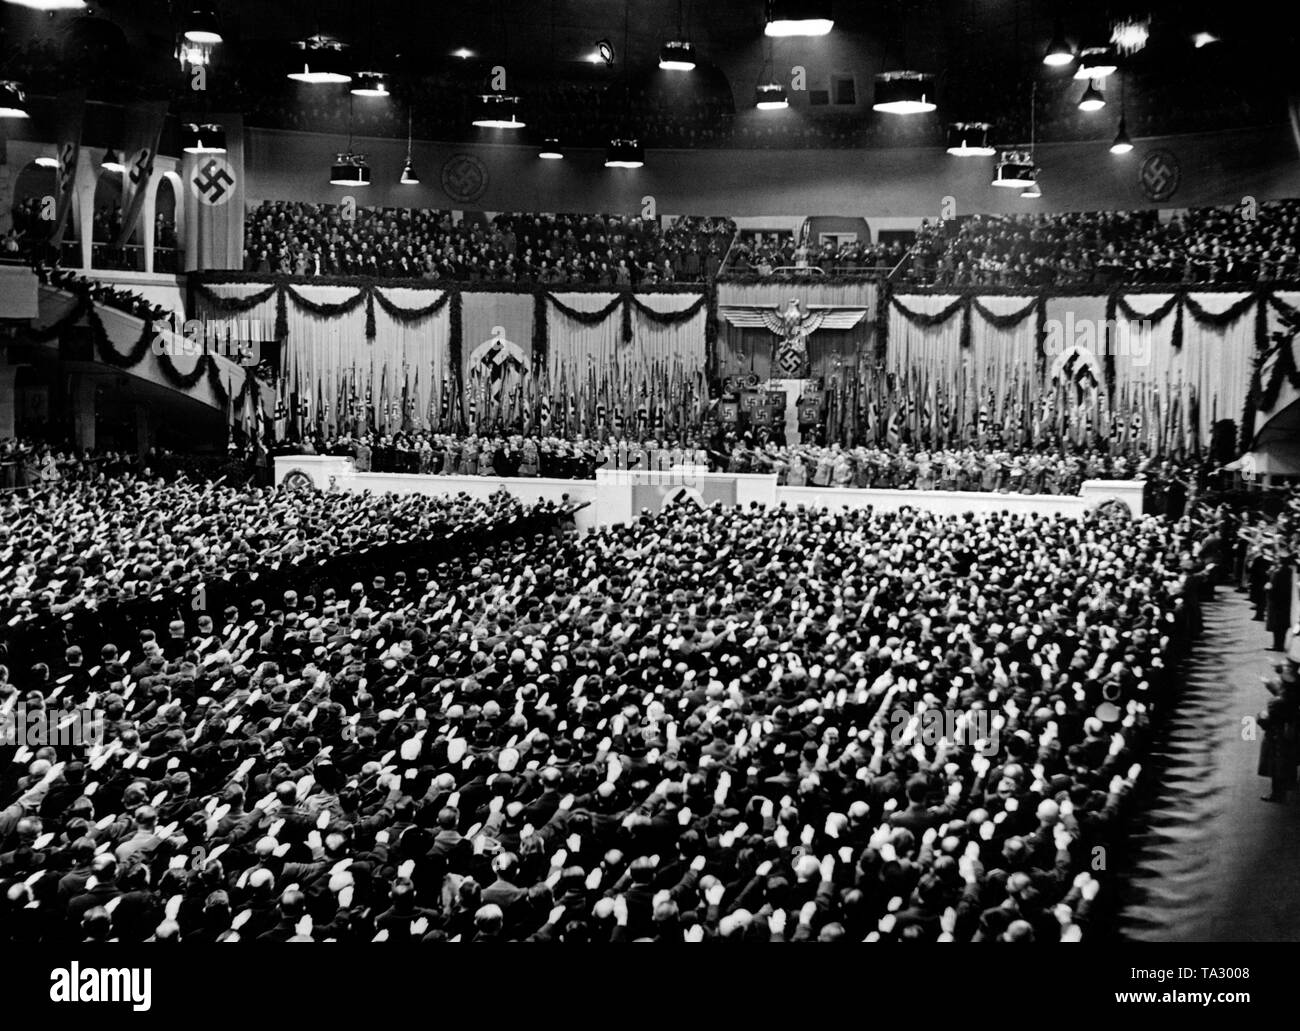 Después de Joseph Goebbels, Ministro de propaganda de Adolf Hitler ha leído la proclamación en el décimo aniversario de la toma del poder, el aumento de los asistentes. Por último, canciones ideológica del partido son cantadas. Foto de propaganda. Foto de stock